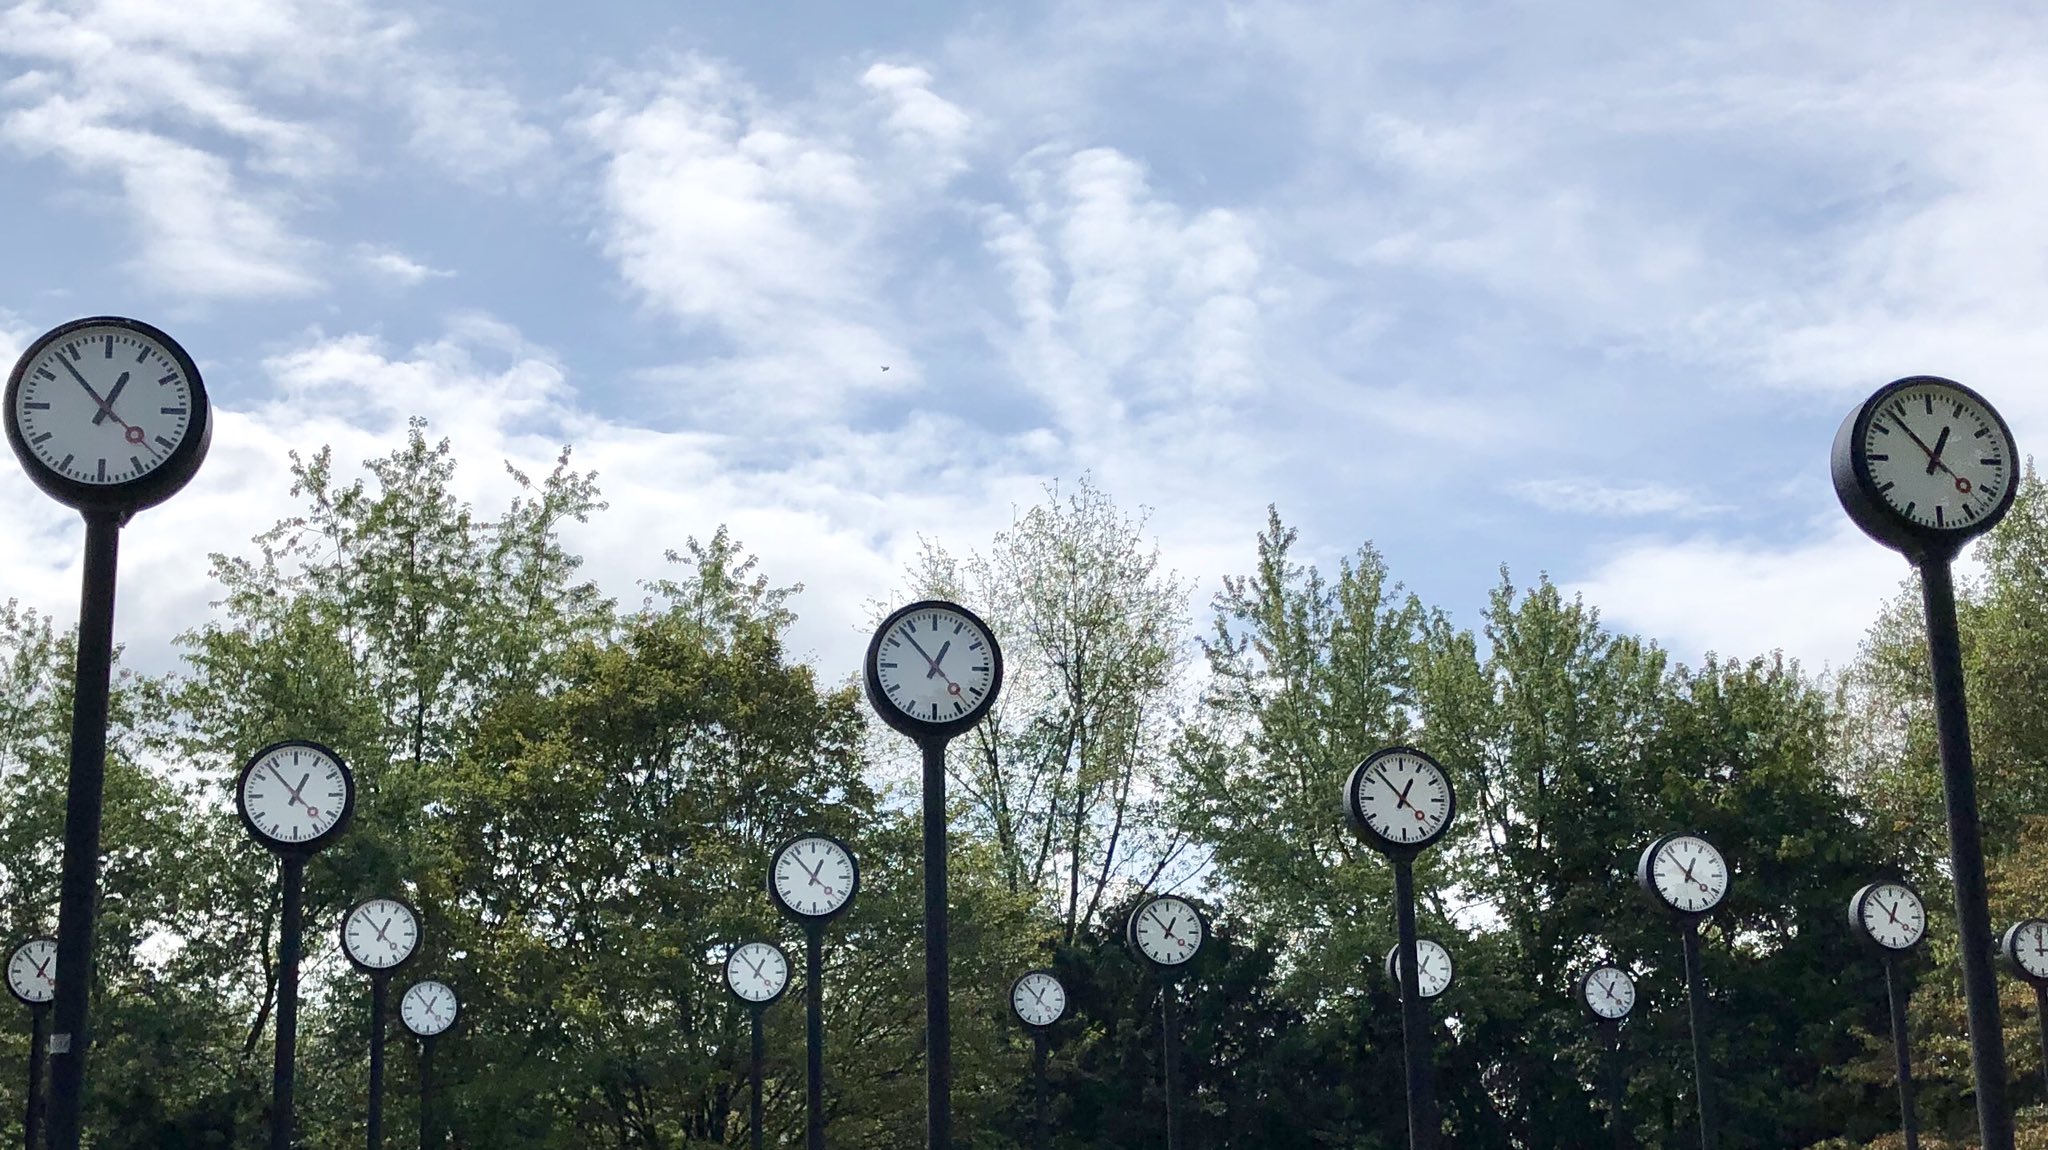 ドイツ幻想風景 デュッセルドルフのパワースポット フォルクスガルテン公園の 時の原 Zeitfeld 時間に追われている 奪われていると憂いている方は 一度 時の原を訪れるといいでしょう 無数の時計の針の動きをじっと眺めていると 時の流れが少し